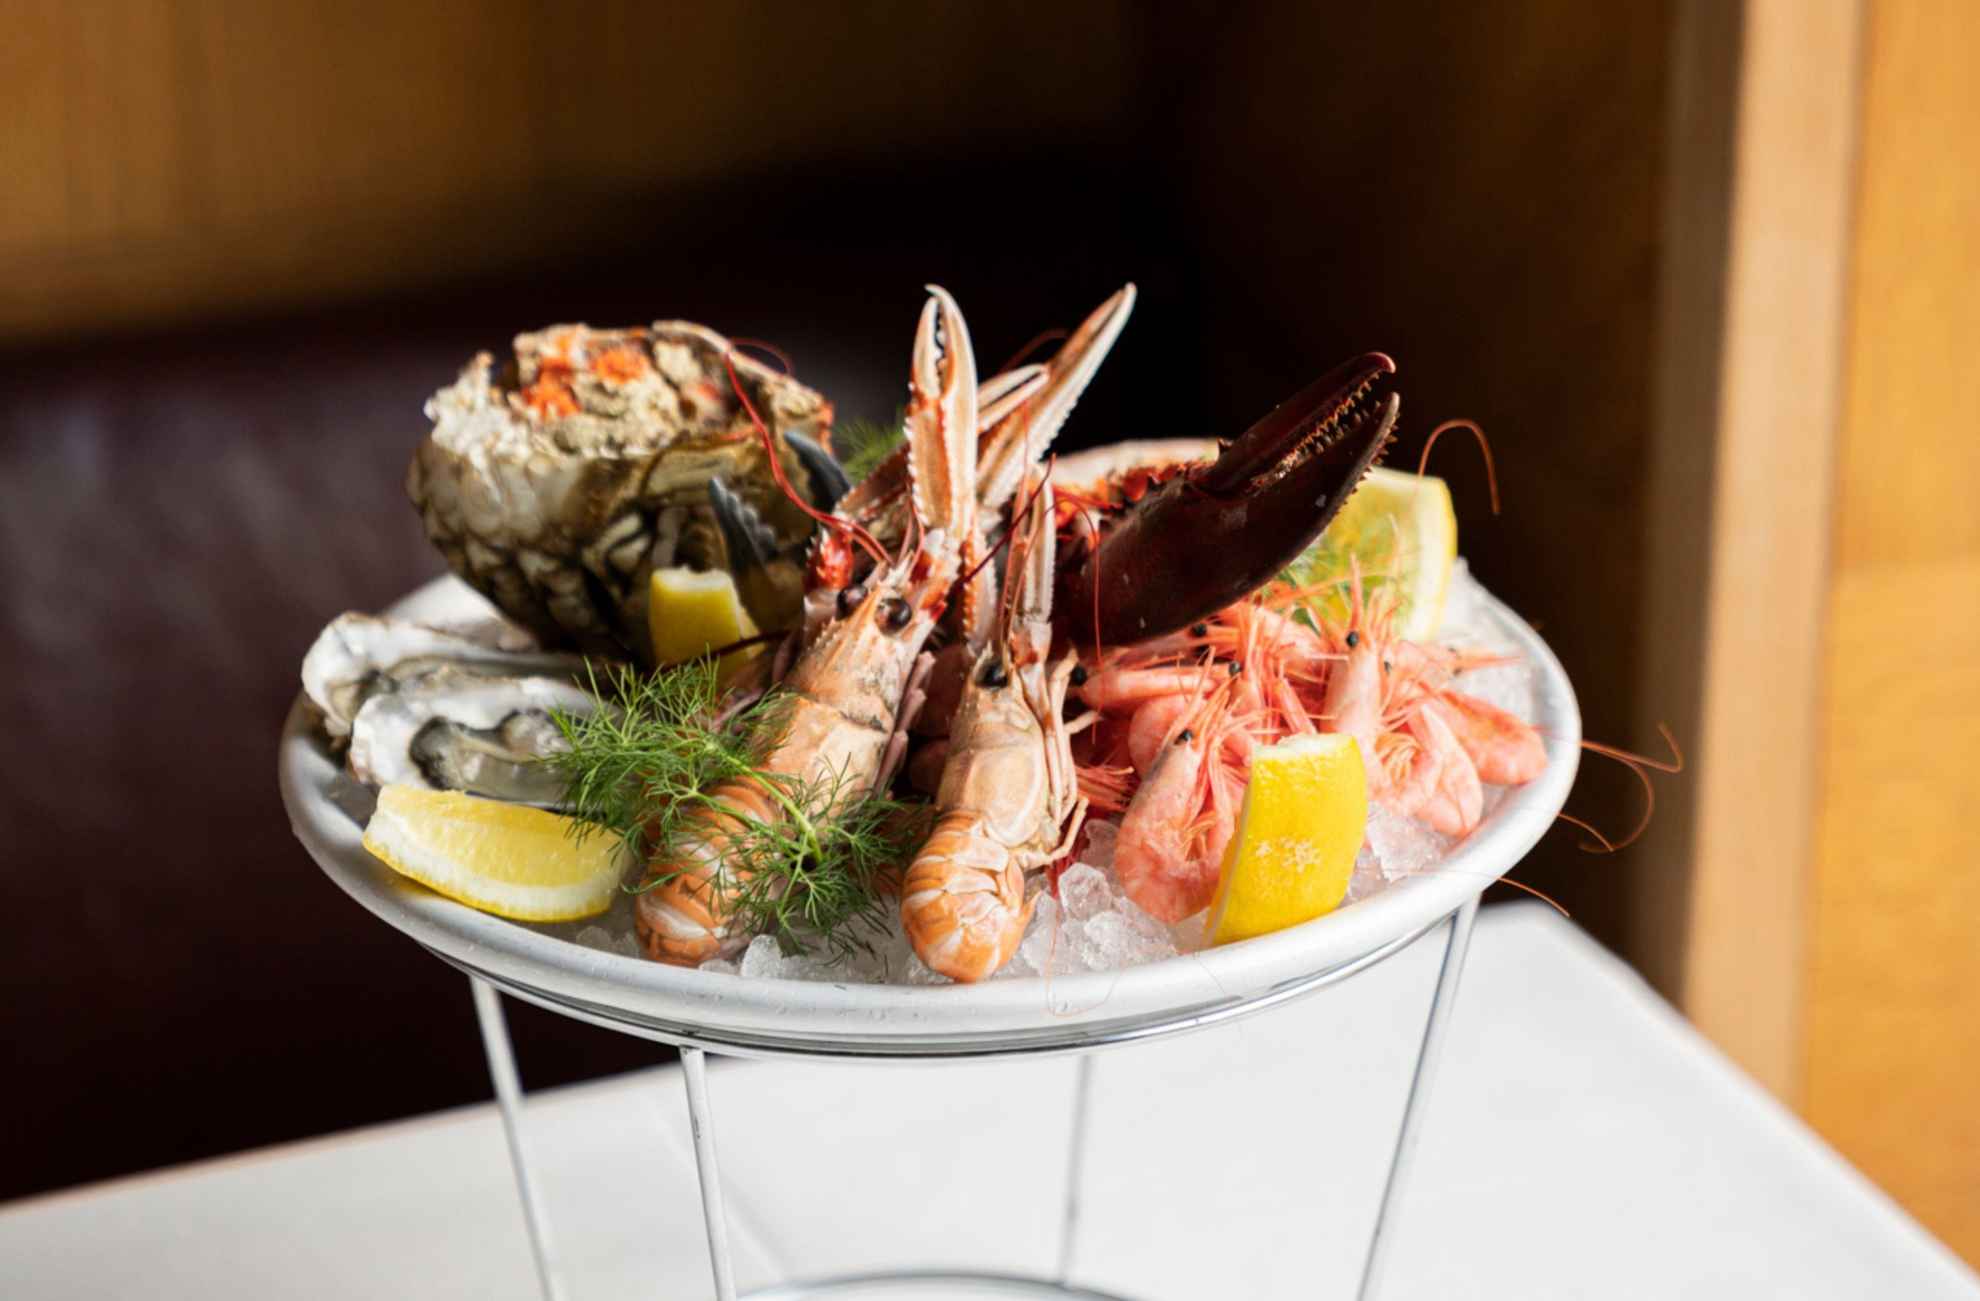 Des écrevisses, des huîtres, des crevettes, un crabe, du citron et de l'aneth frais sont disposés sur un plateau de fruits de mer, au restaurant Sturehof.